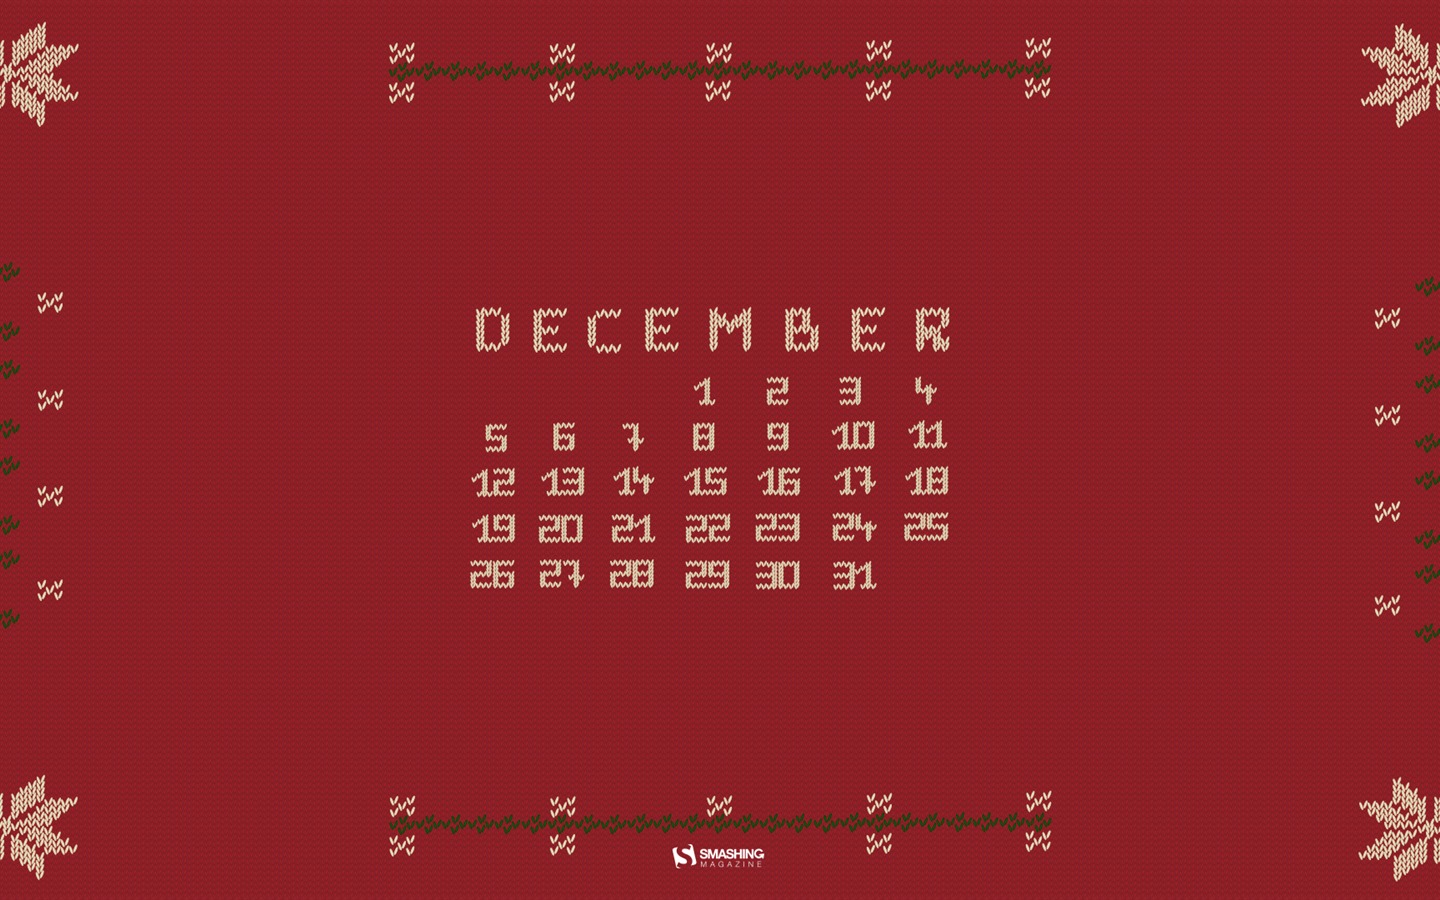 December 2016 Christmas theme calendar wallpaper (2) #12 - 1440x900